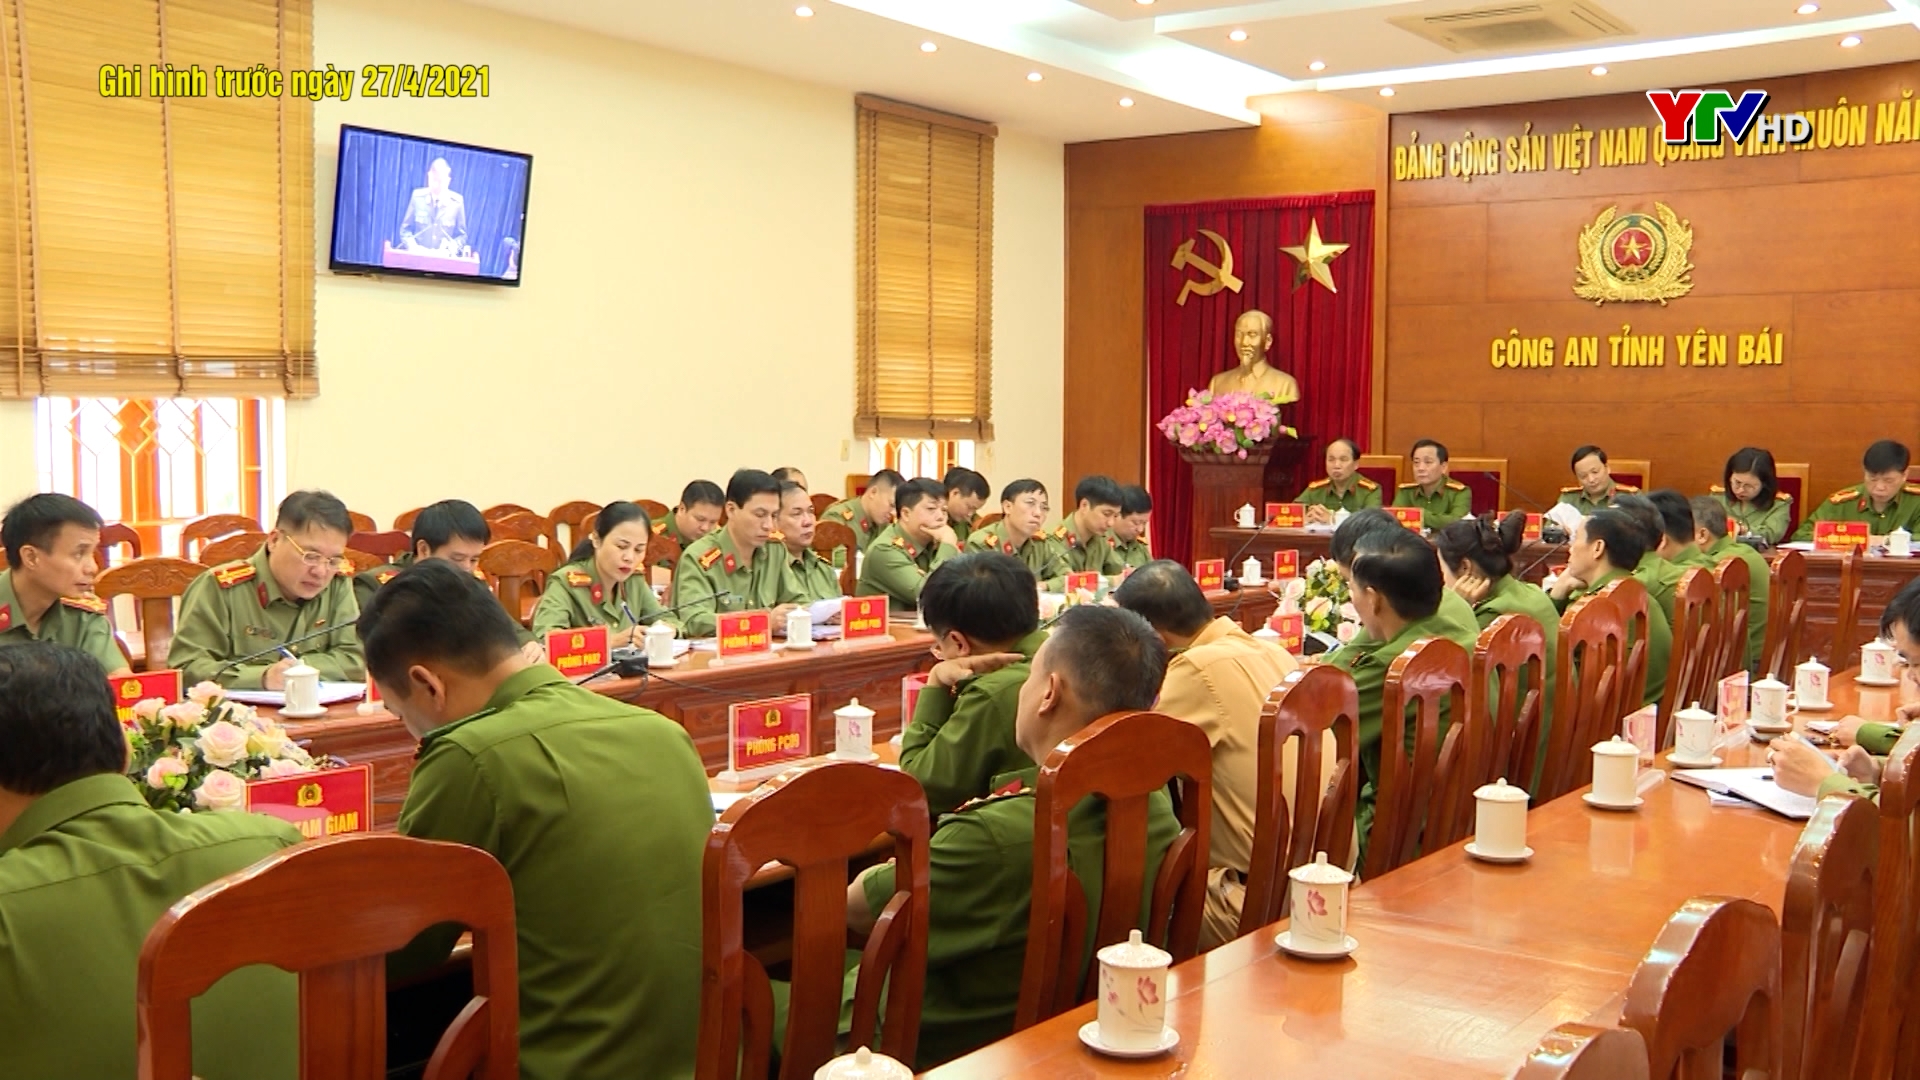 Công an tỉnh Yên Bái đảm bảo an ninh trật tự phục vụ bầu cử